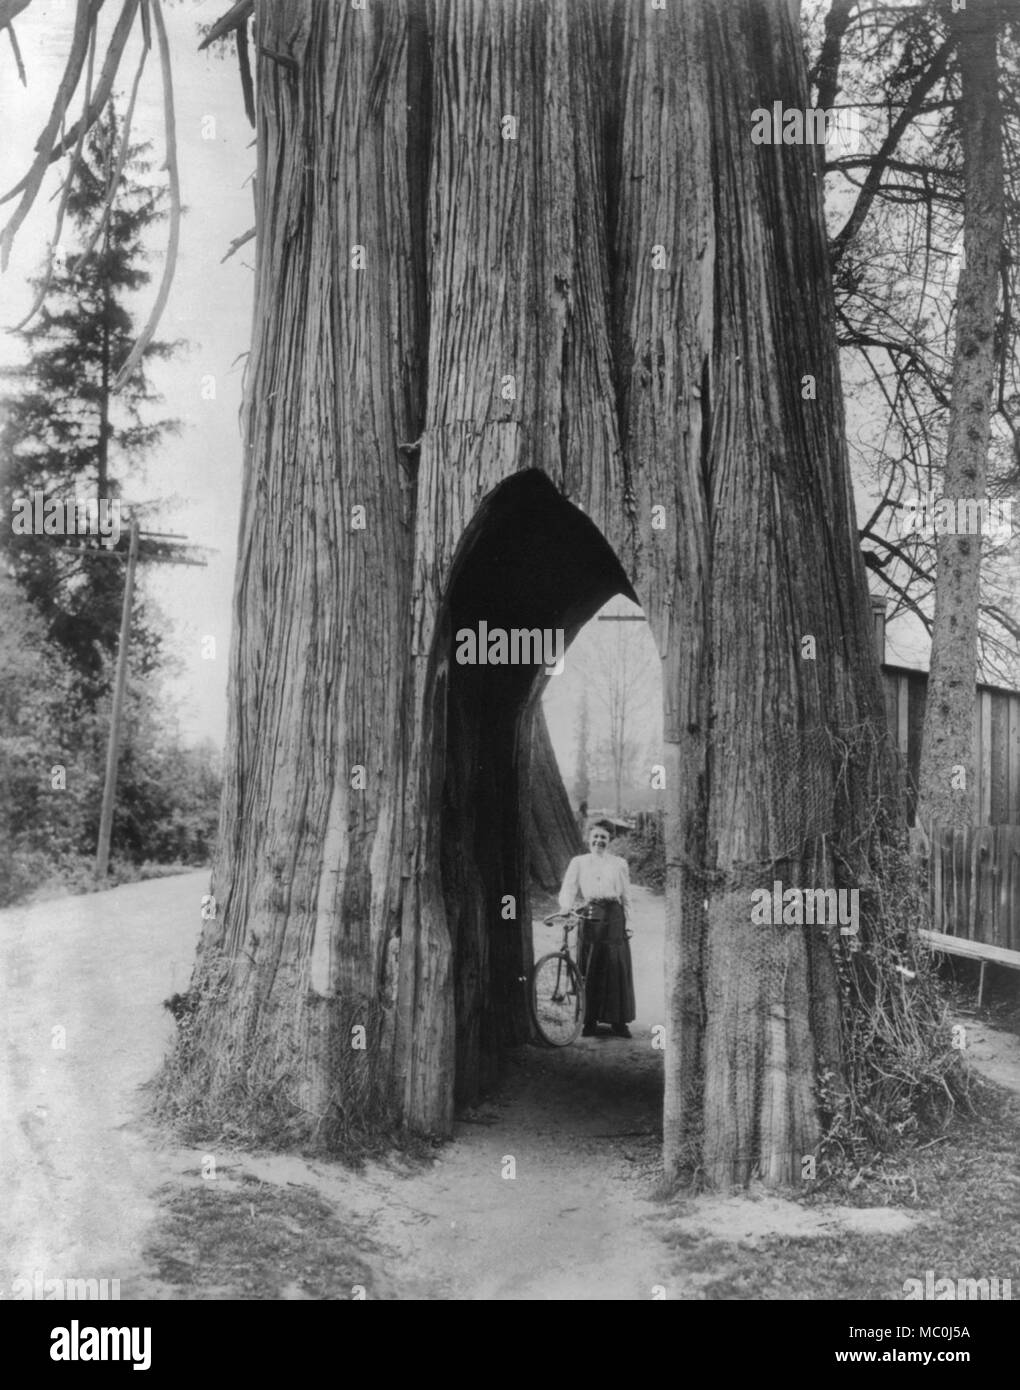 La célèbre location arbre de Snohomish, Washington - Femme avec un vélo vu par découper une partie d'un cèdre. 1911 Banque D'Images